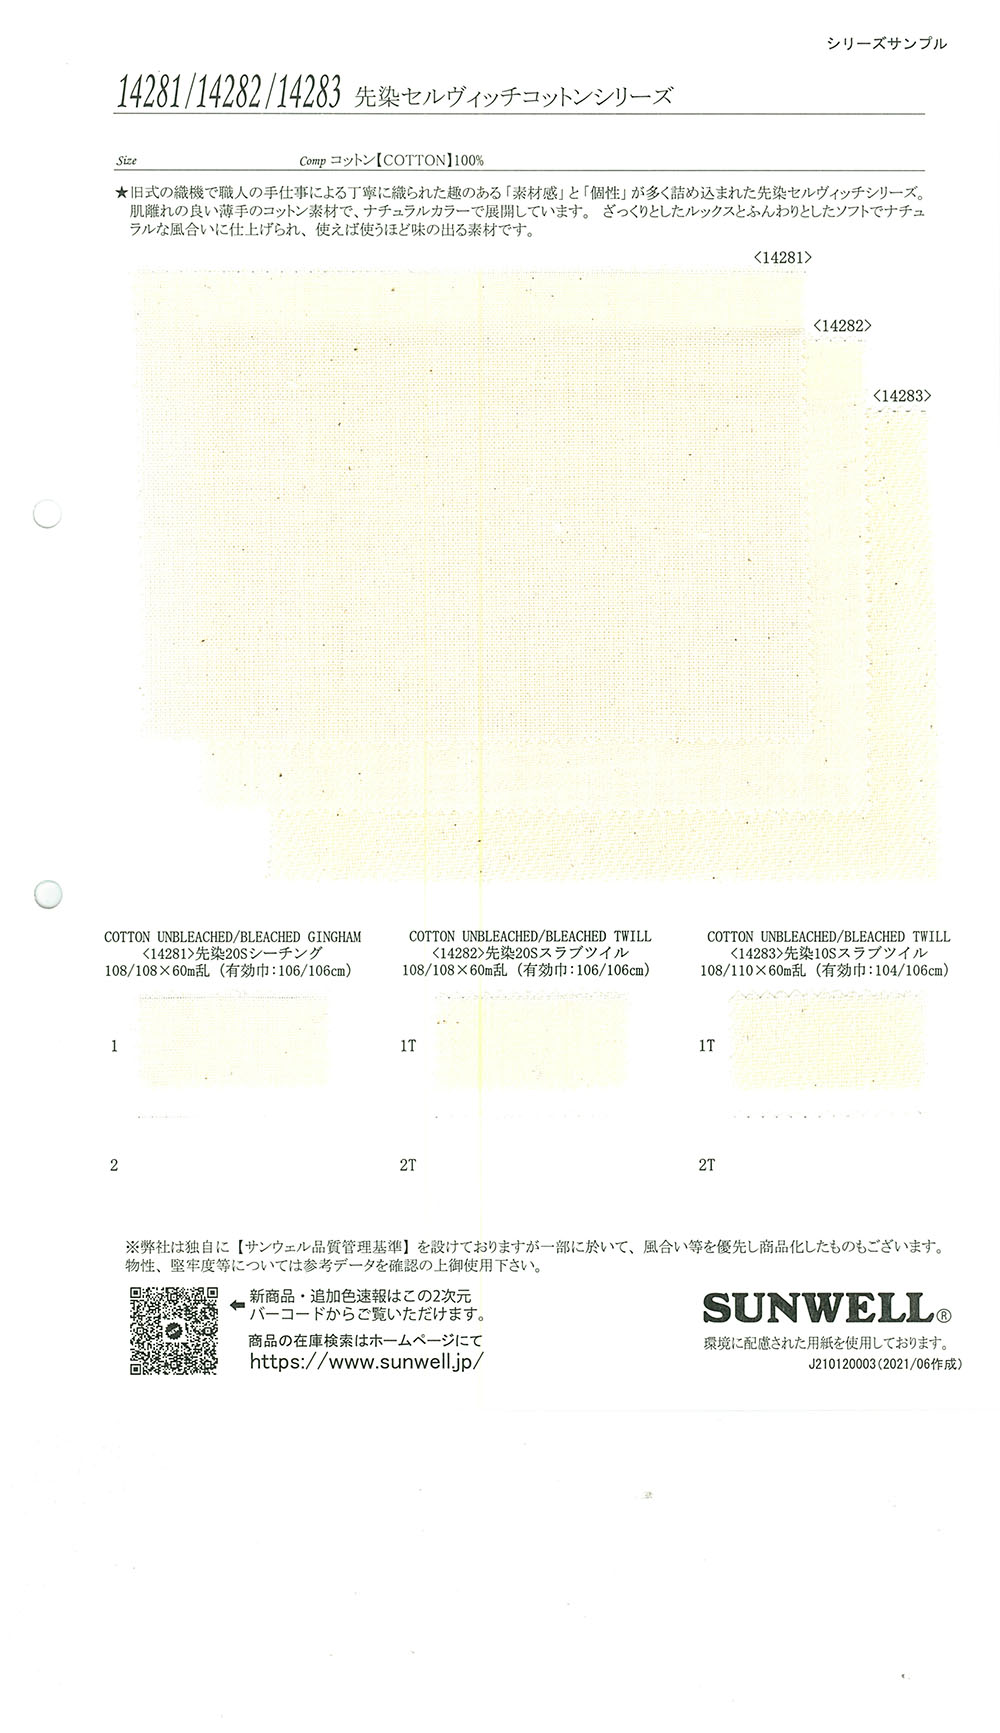 14282 セルヴィッチコットンシリーズ 先染20sスラブツイル[生地] SUNWELL(サンウェル)